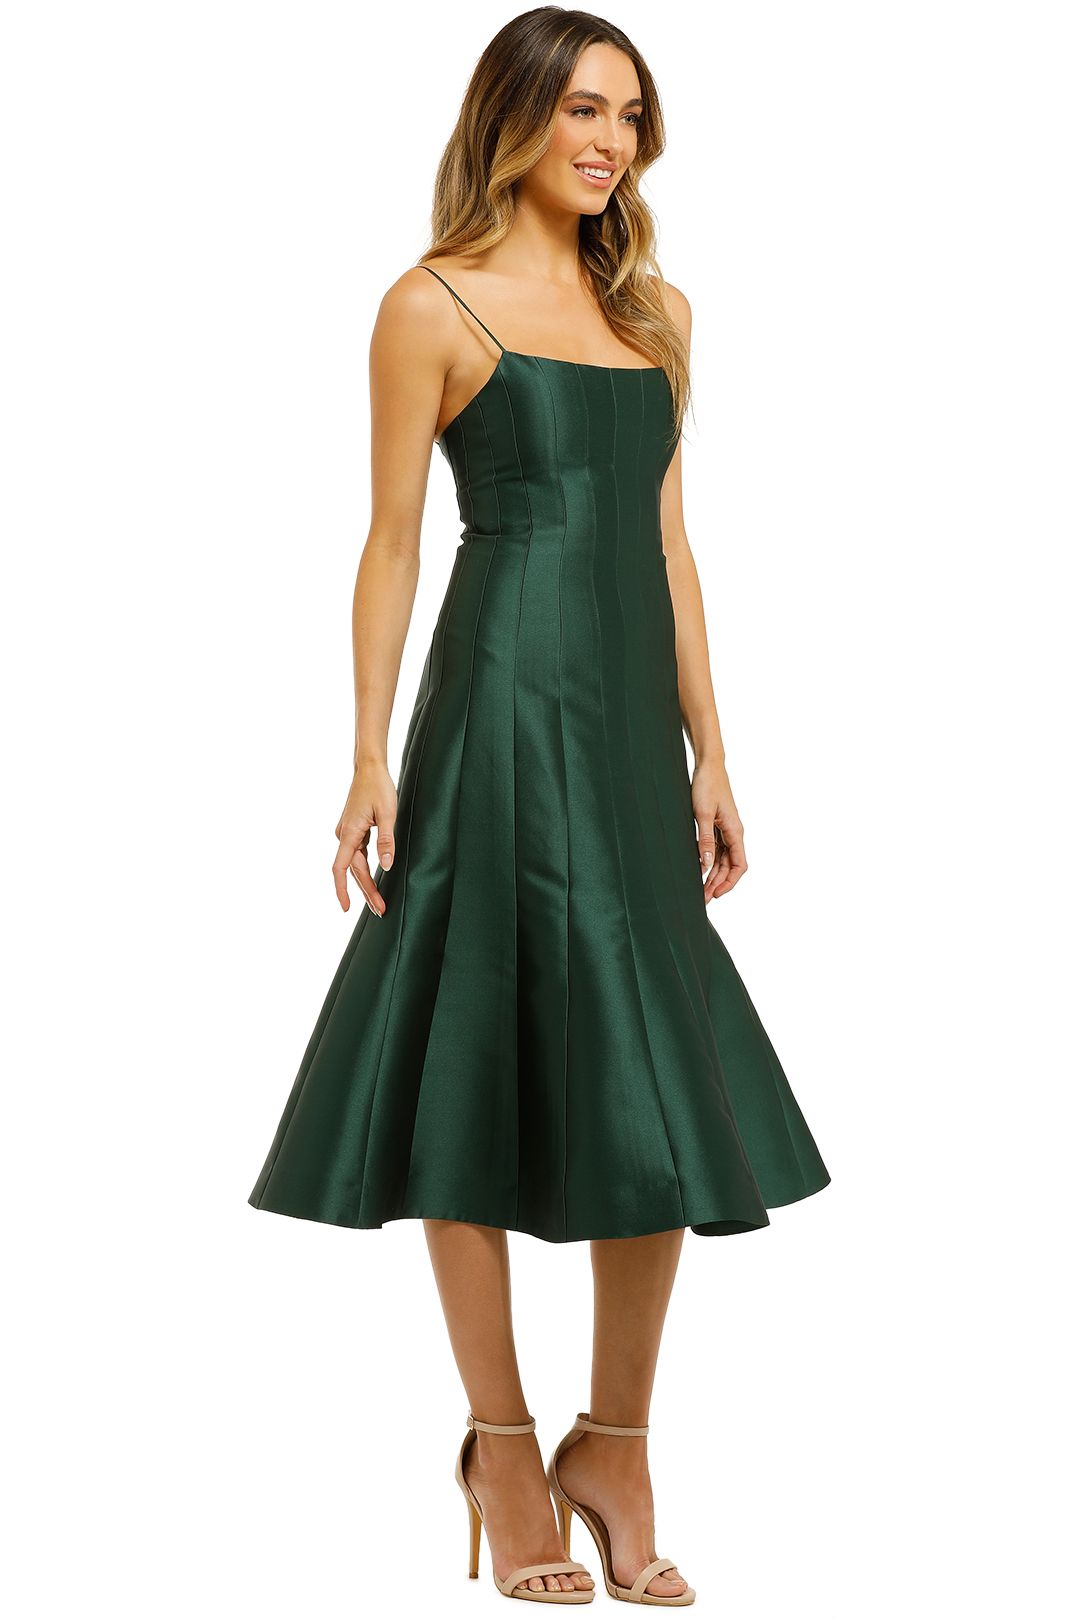 Thurley-Caspian-Dress-Bottle-Green-Side